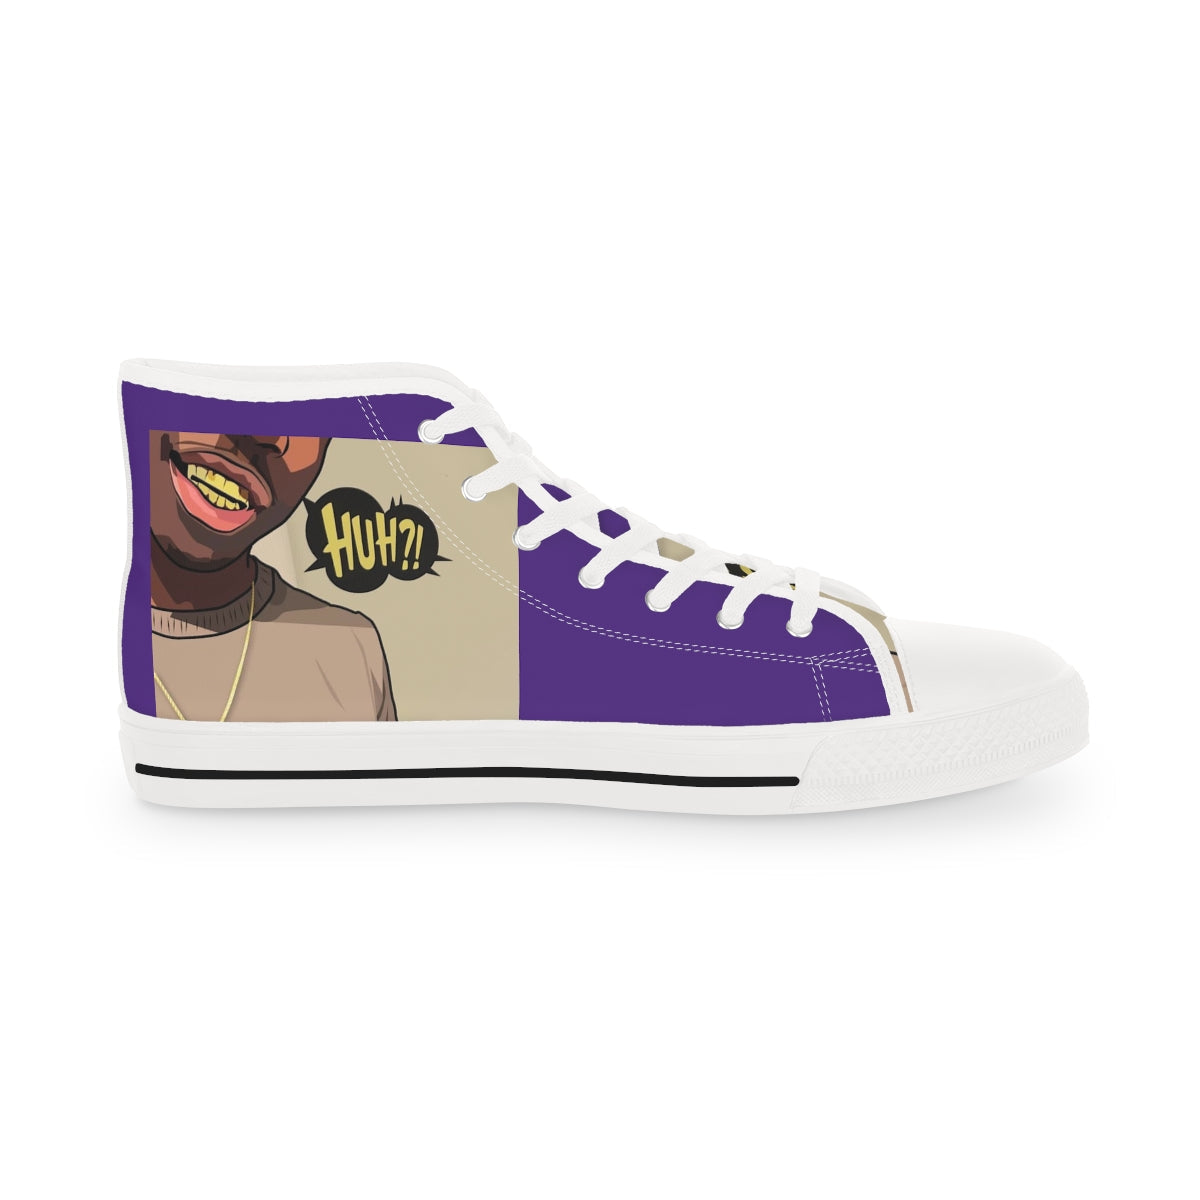 Purple Men's High Top Sneakers